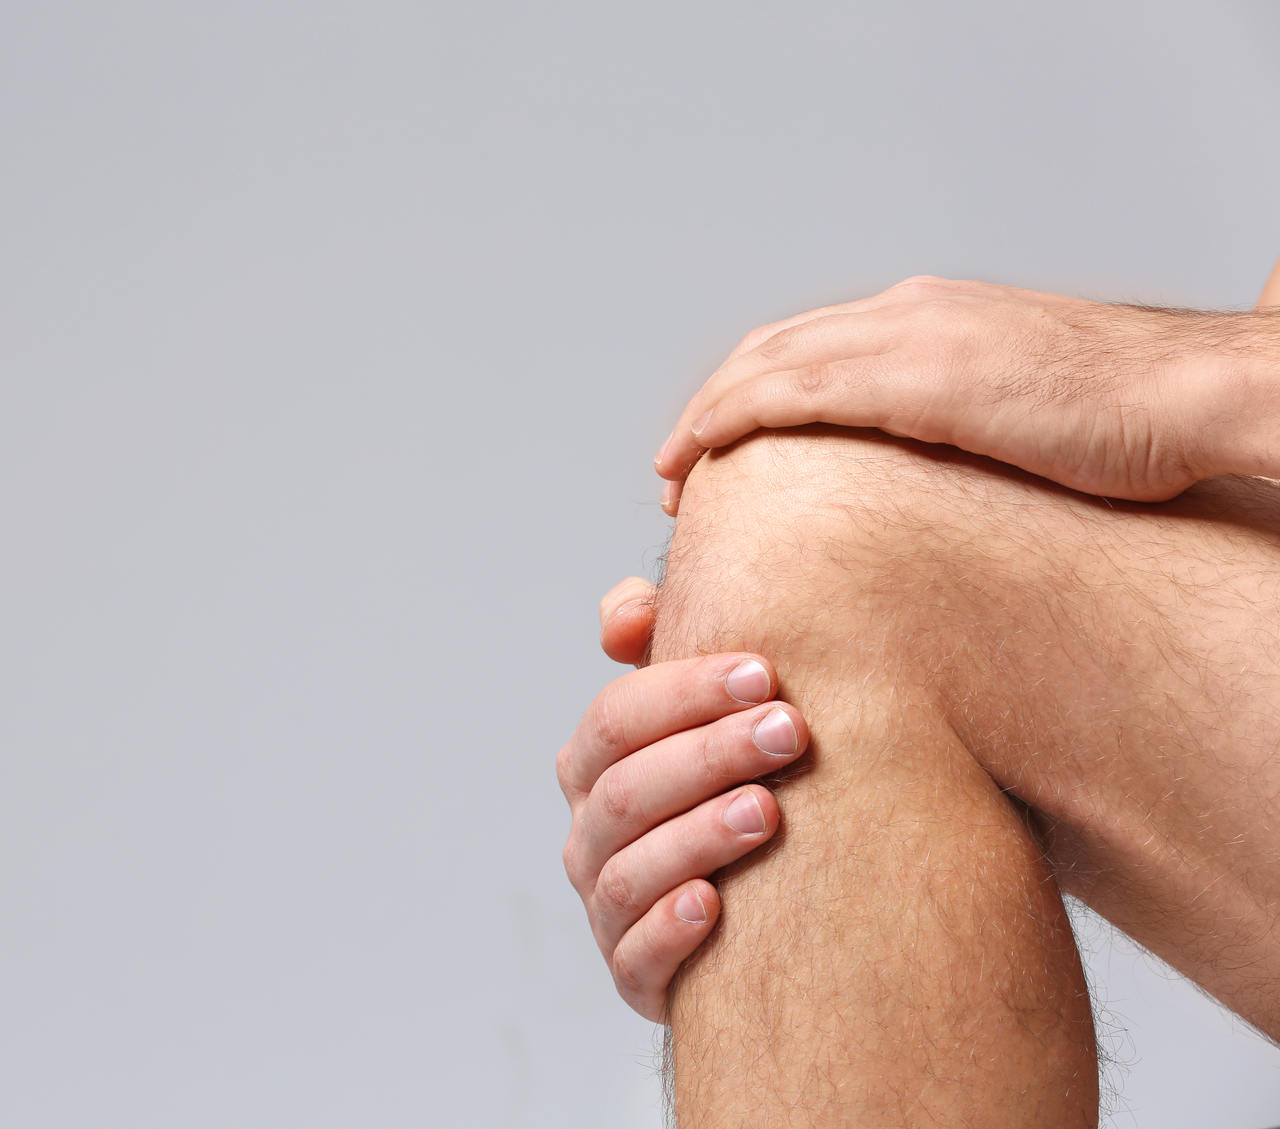 Clinica Ortopédica Goiânia - Como fica o joelho depois da cirurgia de Ligamento Cruzado Anterior (LCA)?